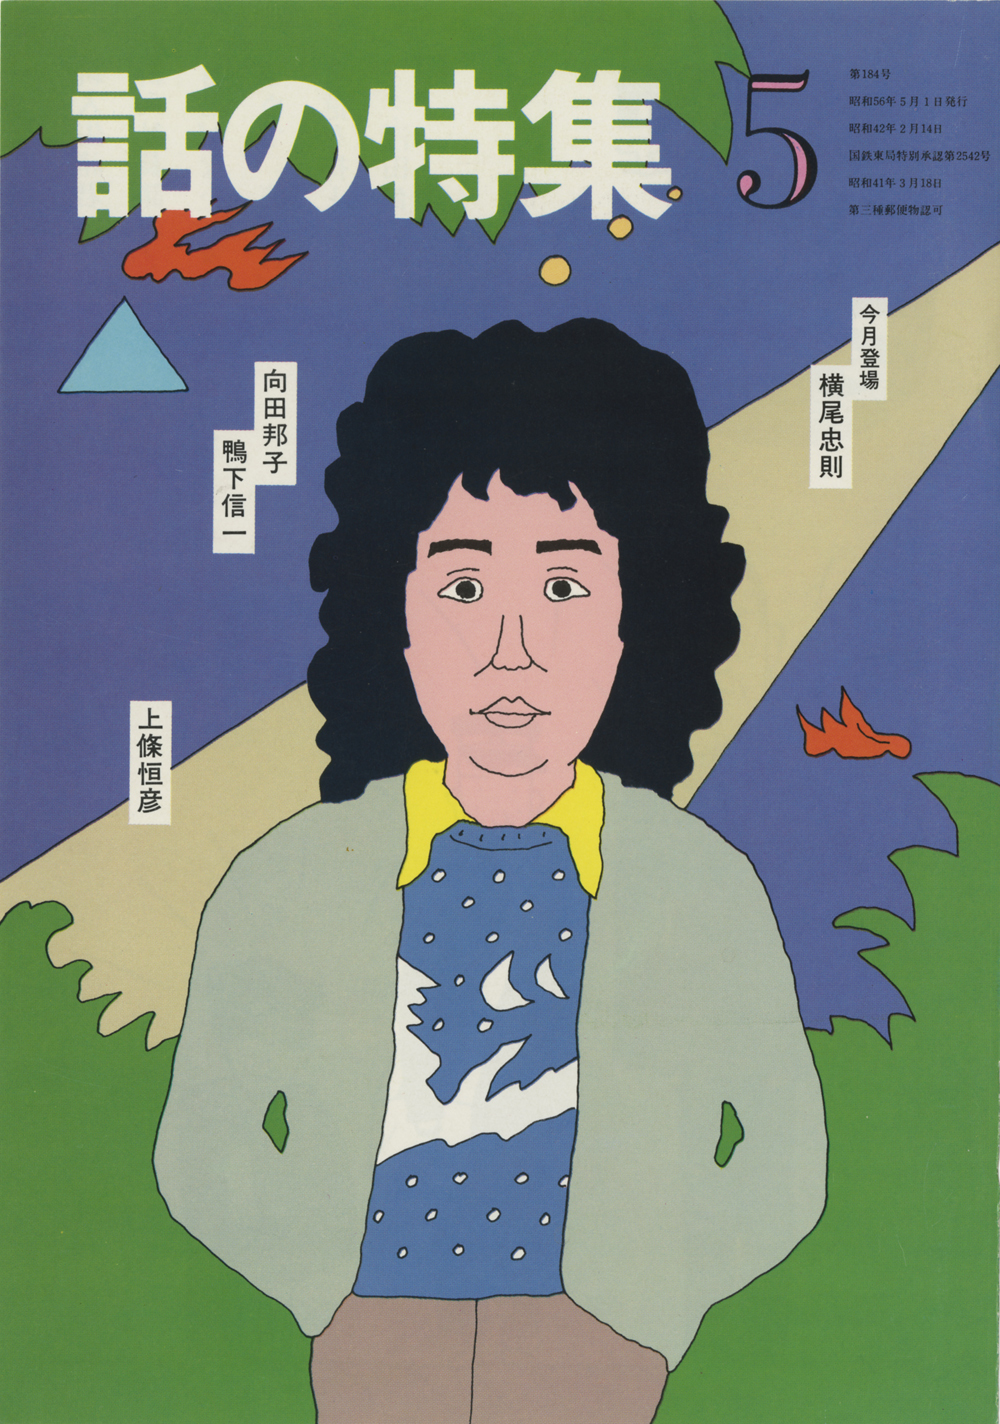 横尾忠則を表紙モデルにした「話の特集」〈1981年〉。この雑誌で、和田はアートディレクターを務めた。「イラストレーション＝○○」とイラストレーターの名前を記載するなど、イラストレーションをアピールした。